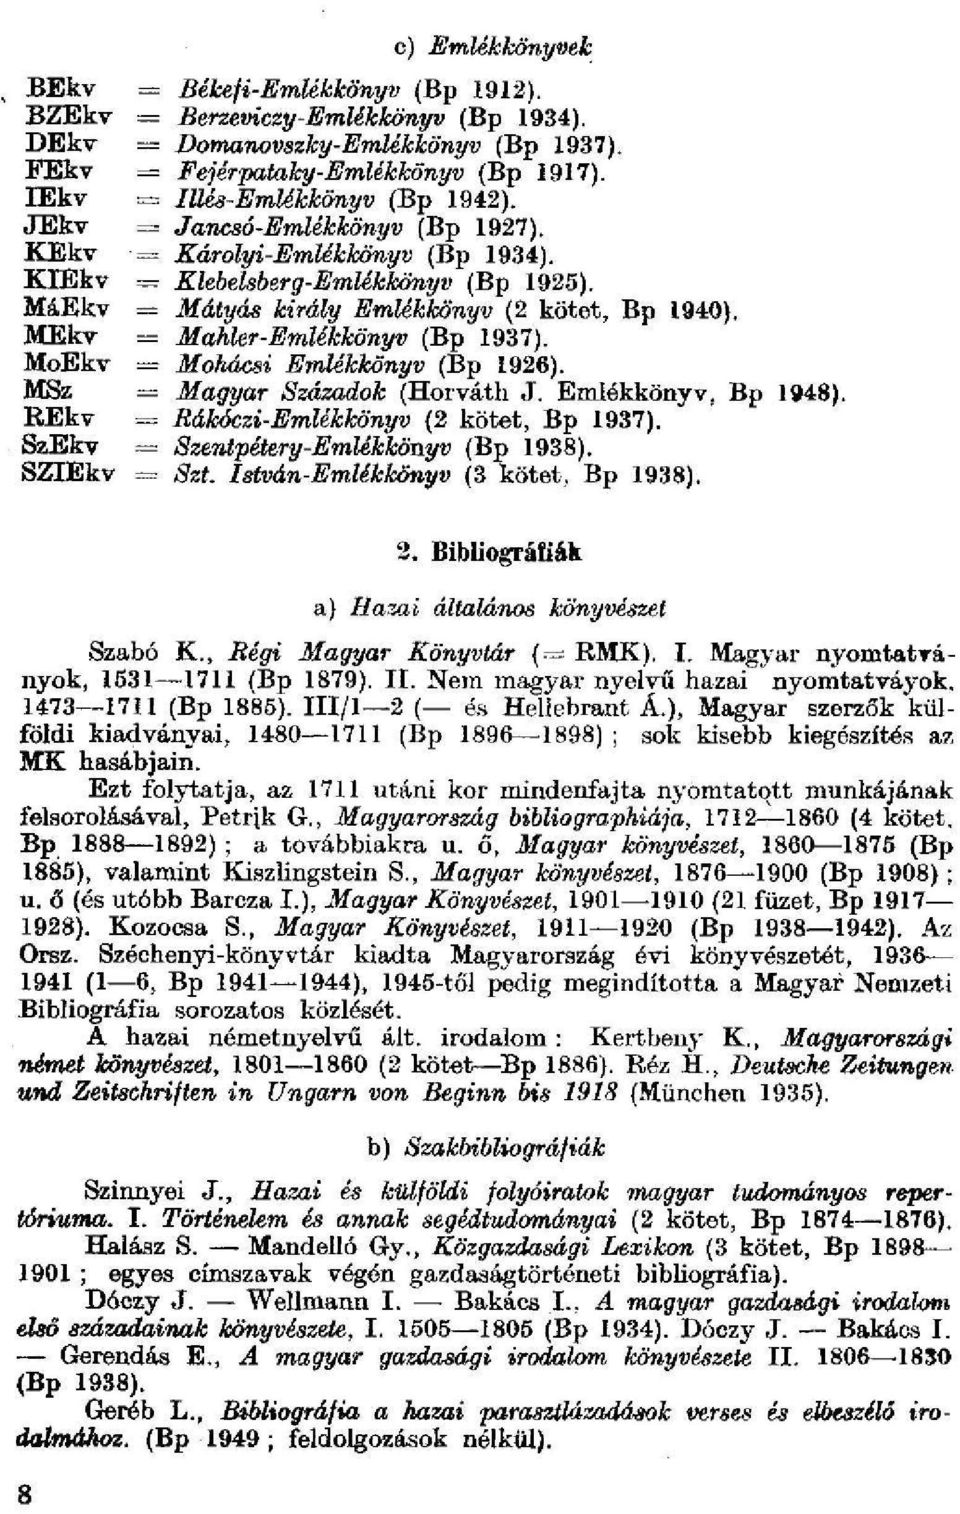 MáEkv = Mátyás király Emlékkönyv (2 kötet, Bp 1940). MEkv = Mahler-Emlékkönyv (Bp 1937). MoEkv = Mohácsi Emlékkönyv (Bp 1926). MSz = Magyar Századok (Horváth J. Emlékkönyv. Bp 1948).